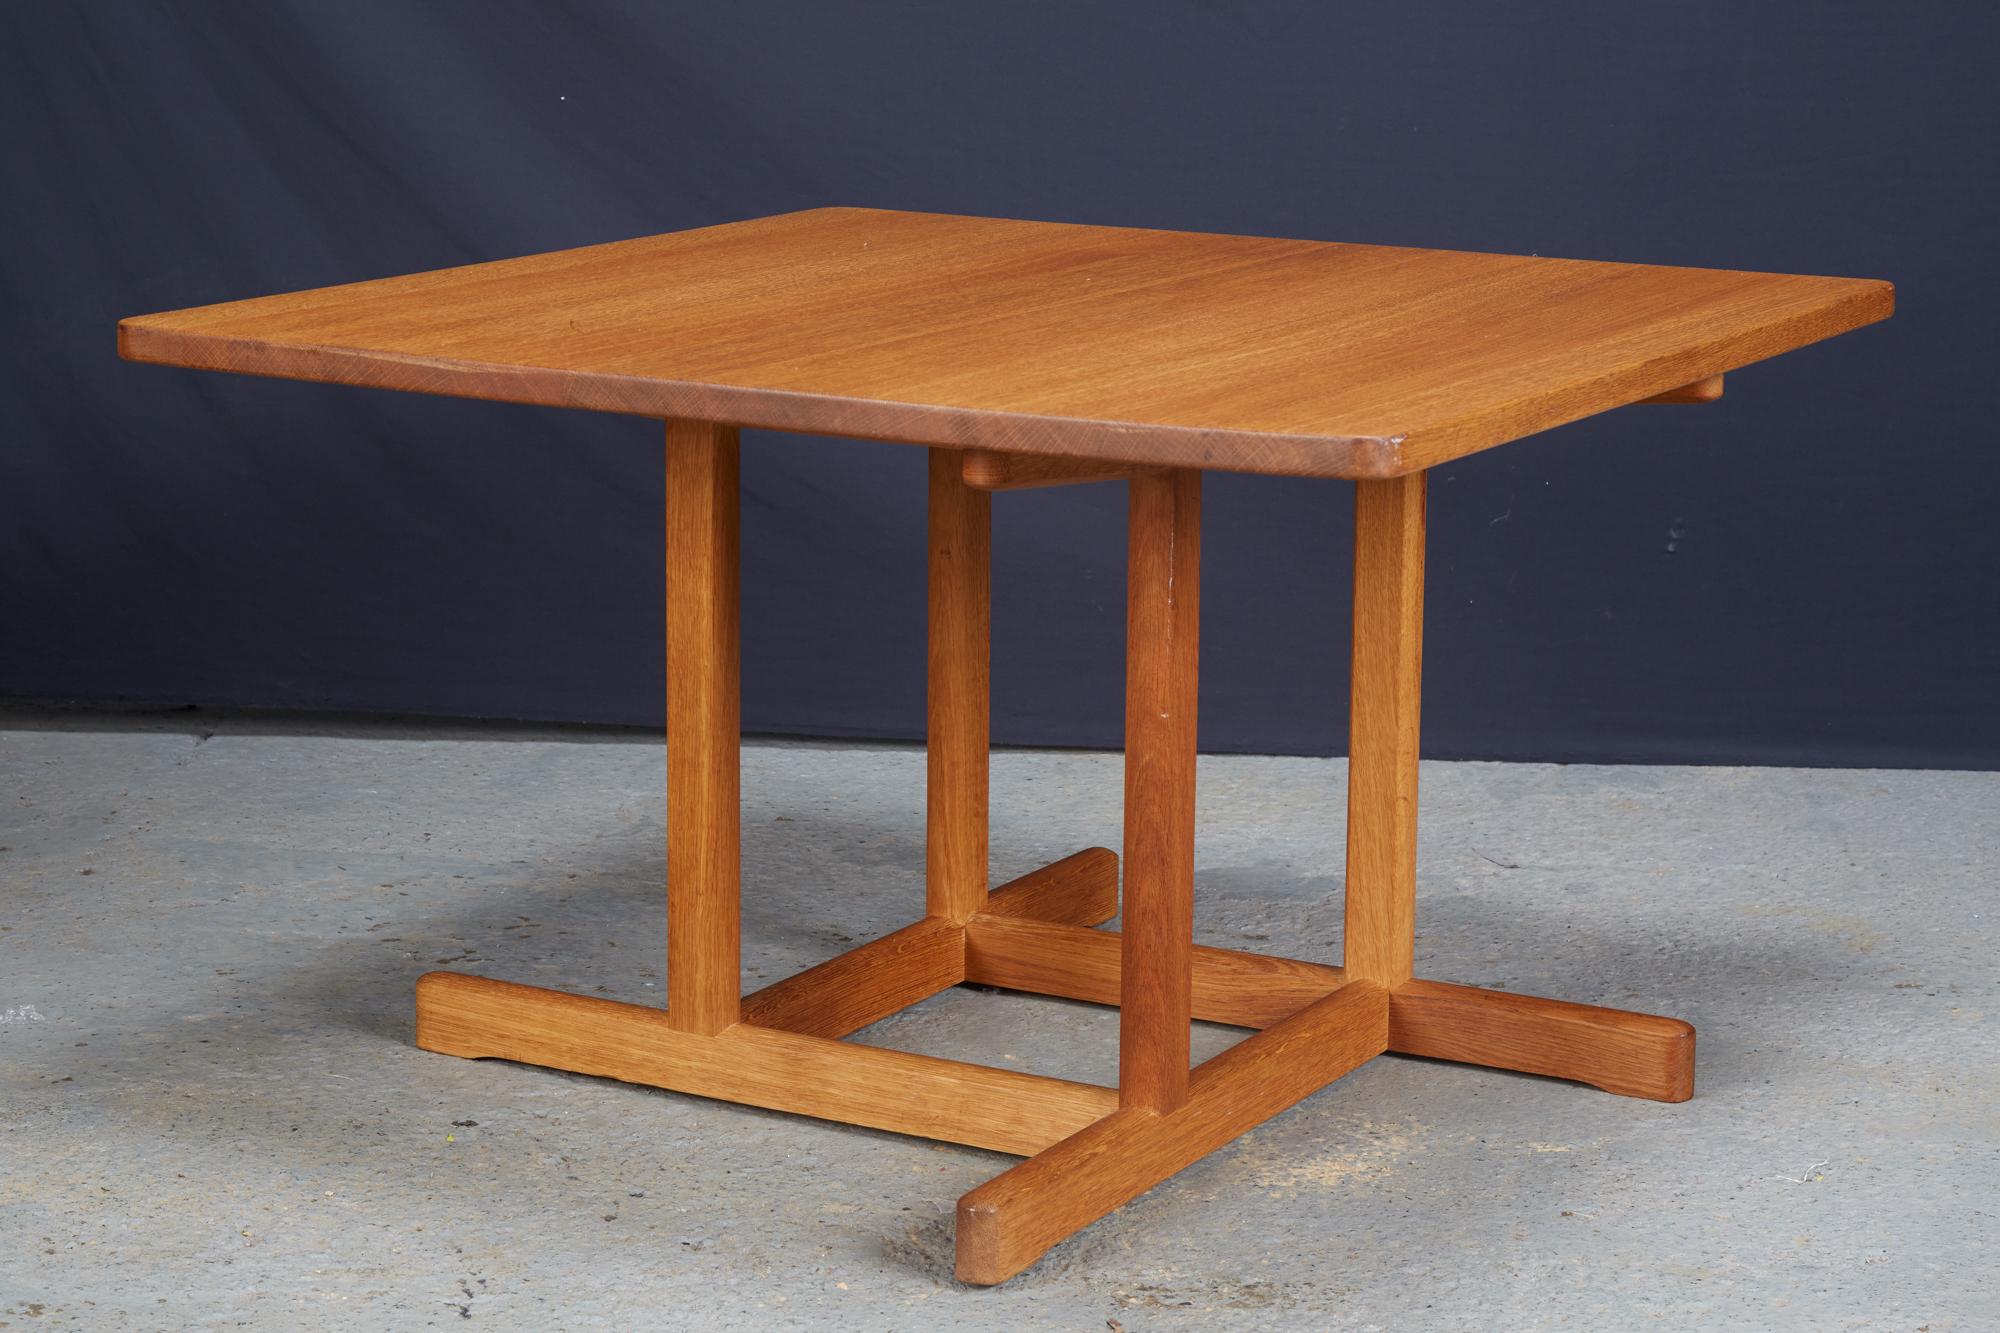 Table basse carrée Borge Mogensen (modèle 5271) en chêne. Cette table basse Kvadratisk, modèle artisanal, a été conçue par Borge Mogensen dans les années 1950 et fabriquée par Fredericia au Danemark. La table est fabriquée en chêne massif avec un